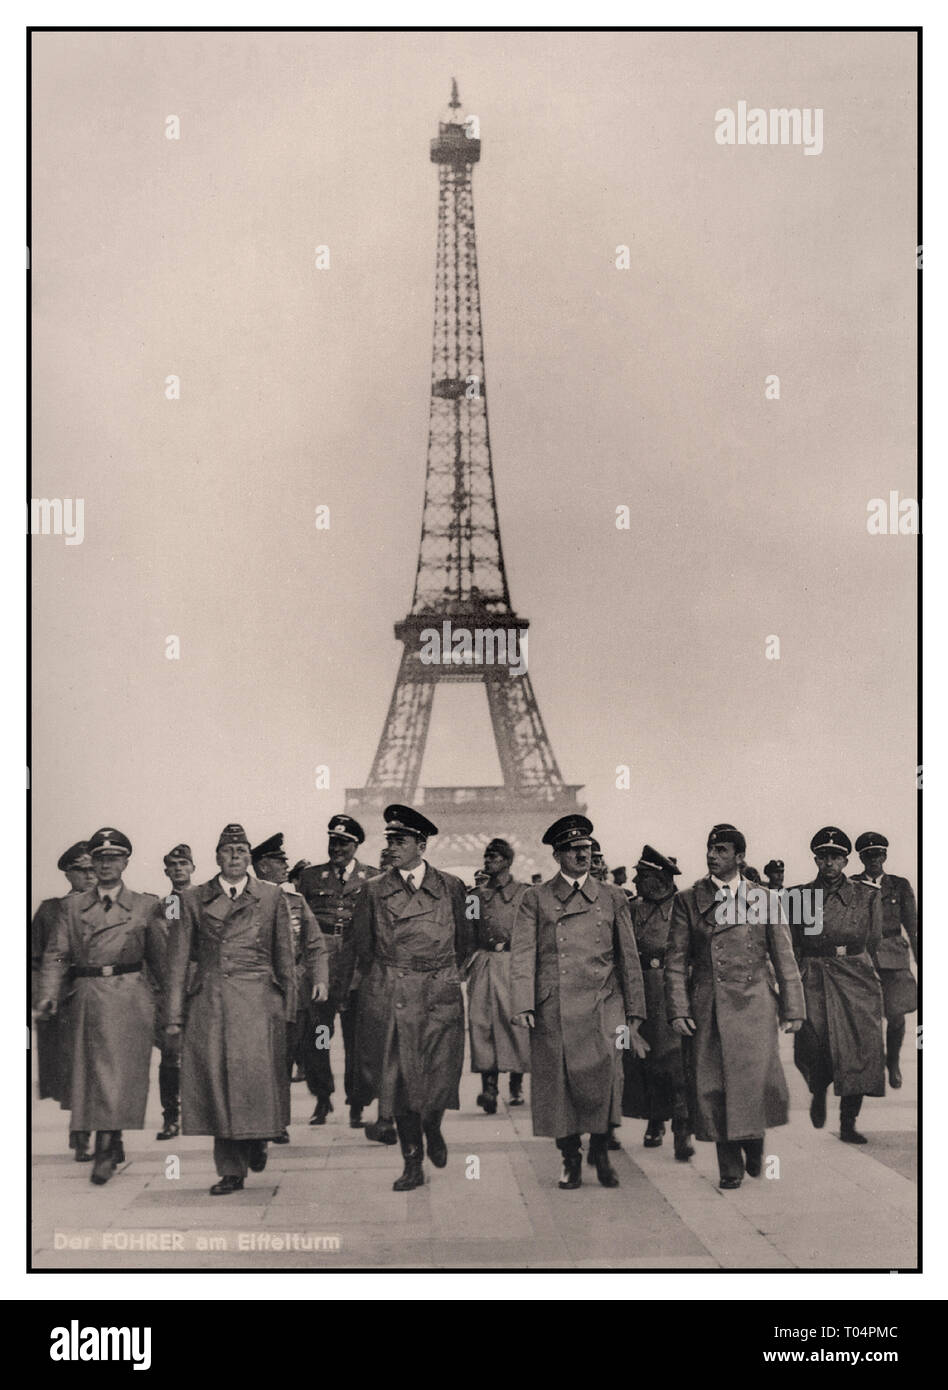 HITLER Tour Eiffel PARIS Adolf Hitler avec son groupe d'officiers militaires de haut rang de l'Allemagne nazie dont le stratège industriel Albert Speer à sa droite, dans Paris occupé avec la Tour Eiffel en arrière-plan.Une image emblématique de propagande nazie soigneusement agencée avec une légende allemande ajoutée, de l'occupation de l'Allemagne nazie en France Seconde Guerre mondiale juillet 1940 WW2 Banque D'Images